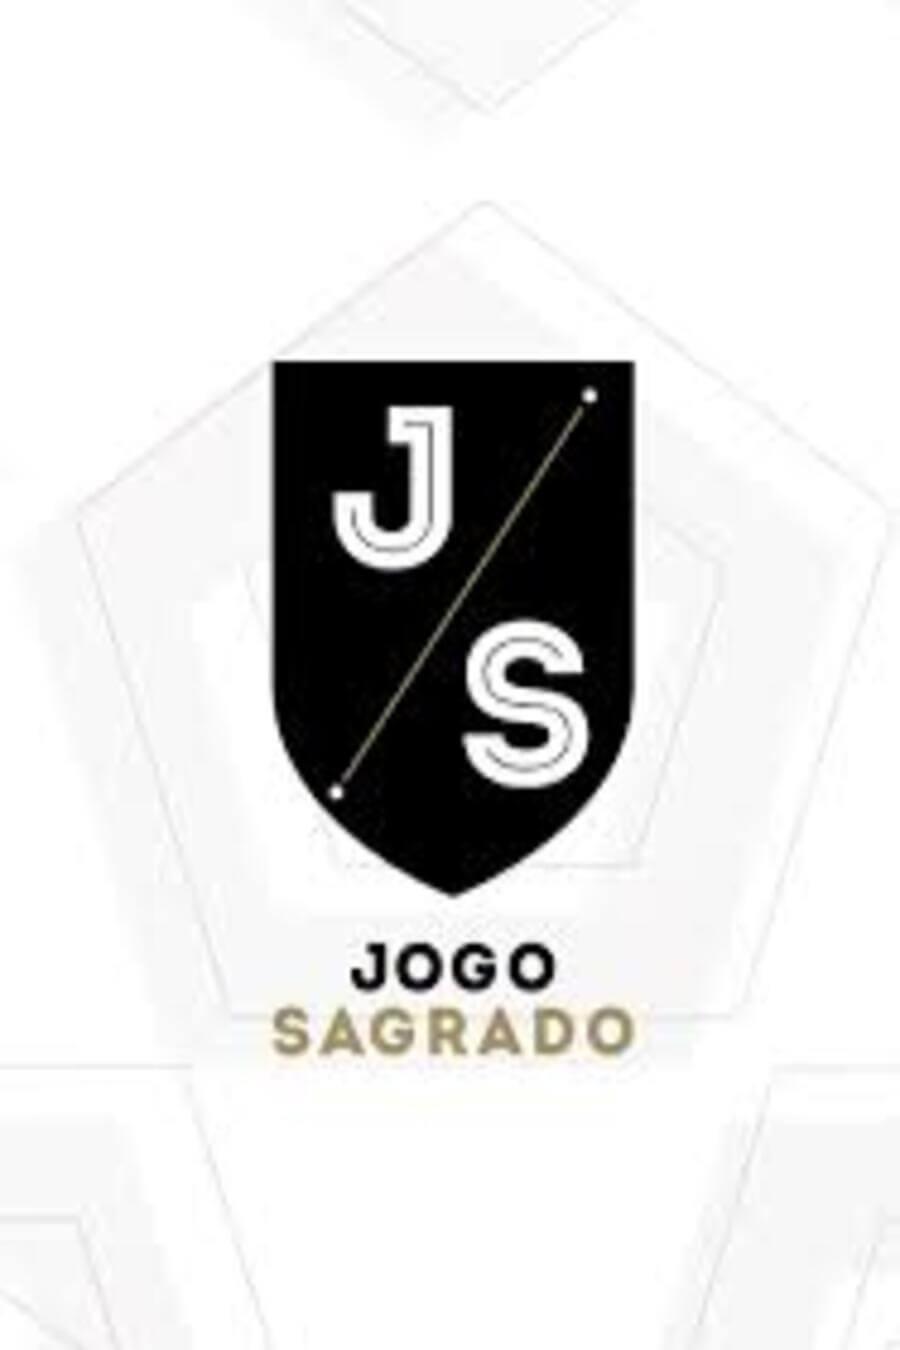 TV ratings for Jogo Sagrado in Malaysia. Fox Sports Brasil TV series